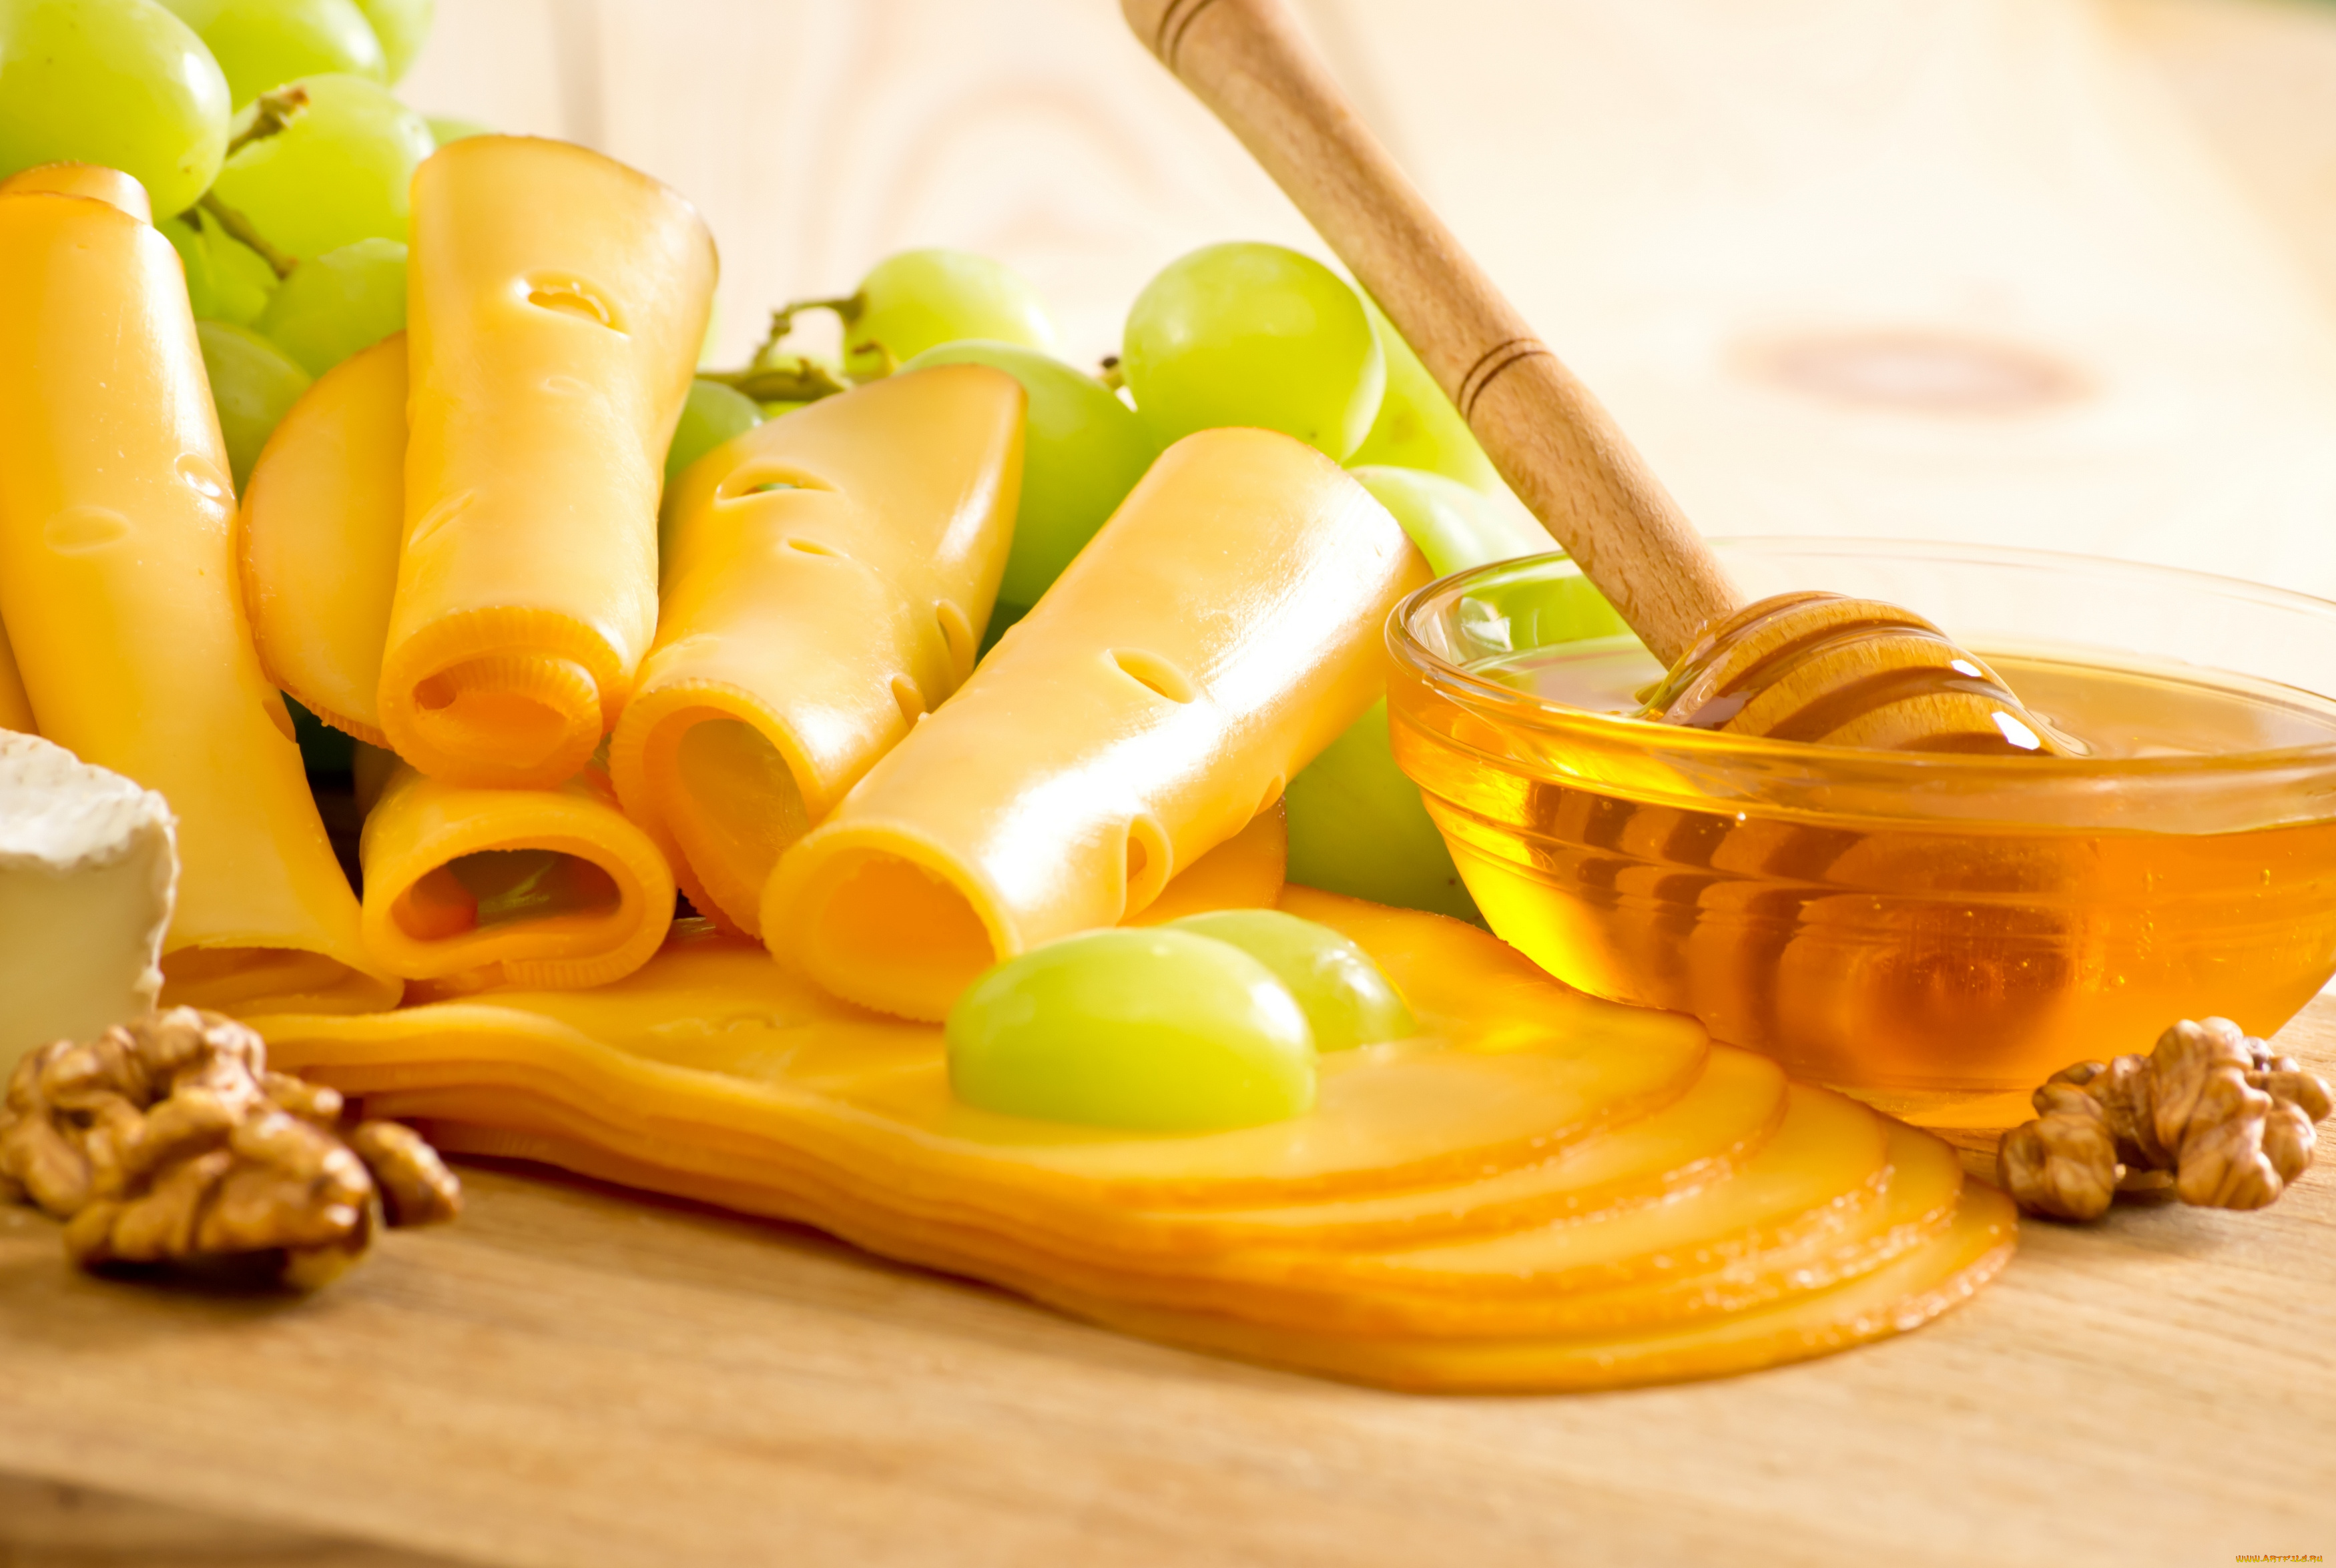 еда, сырные, изделия, сыр, nuts, мед, орехи, honey, grapes, виноград, cheese